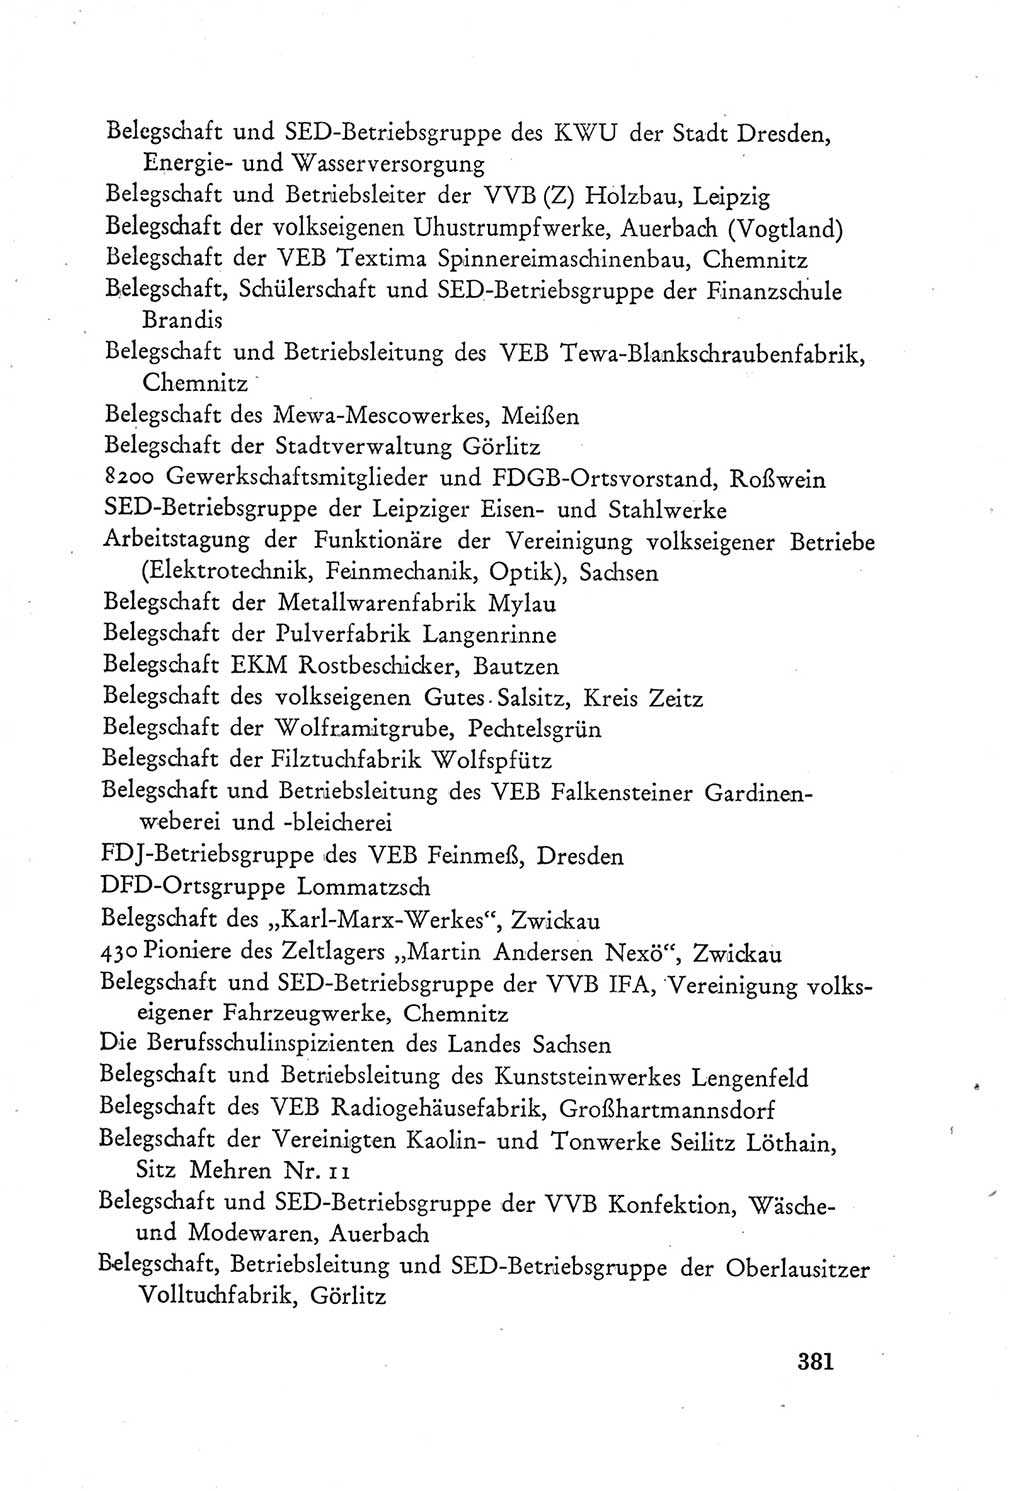 Protokoll der Verhandlungen des Ⅲ. Parteitages der Sozialistischen Einheitspartei Deutschlands (SED) [Deutsche Demokratische Republik (DDR)] 1950, Band 2, Seite 381 (Prot. Verh. Ⅲ. PT SED DDR 1950, Bd. 2, S. 381)